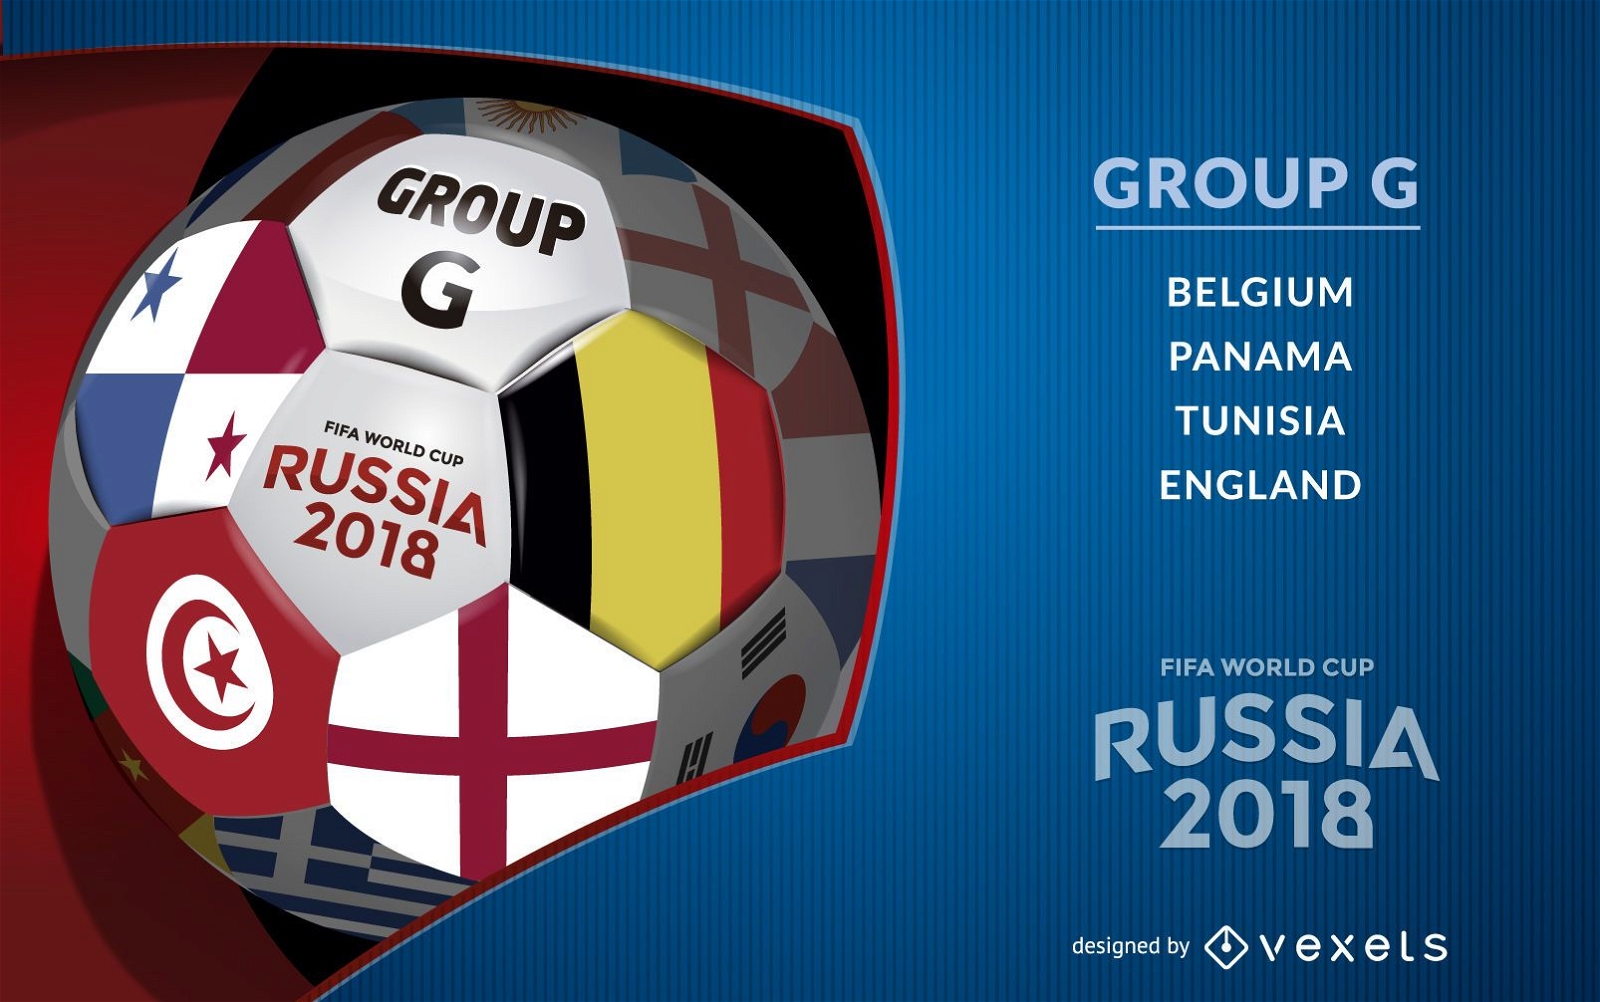 P?ster Rusia 2018 Grupo G